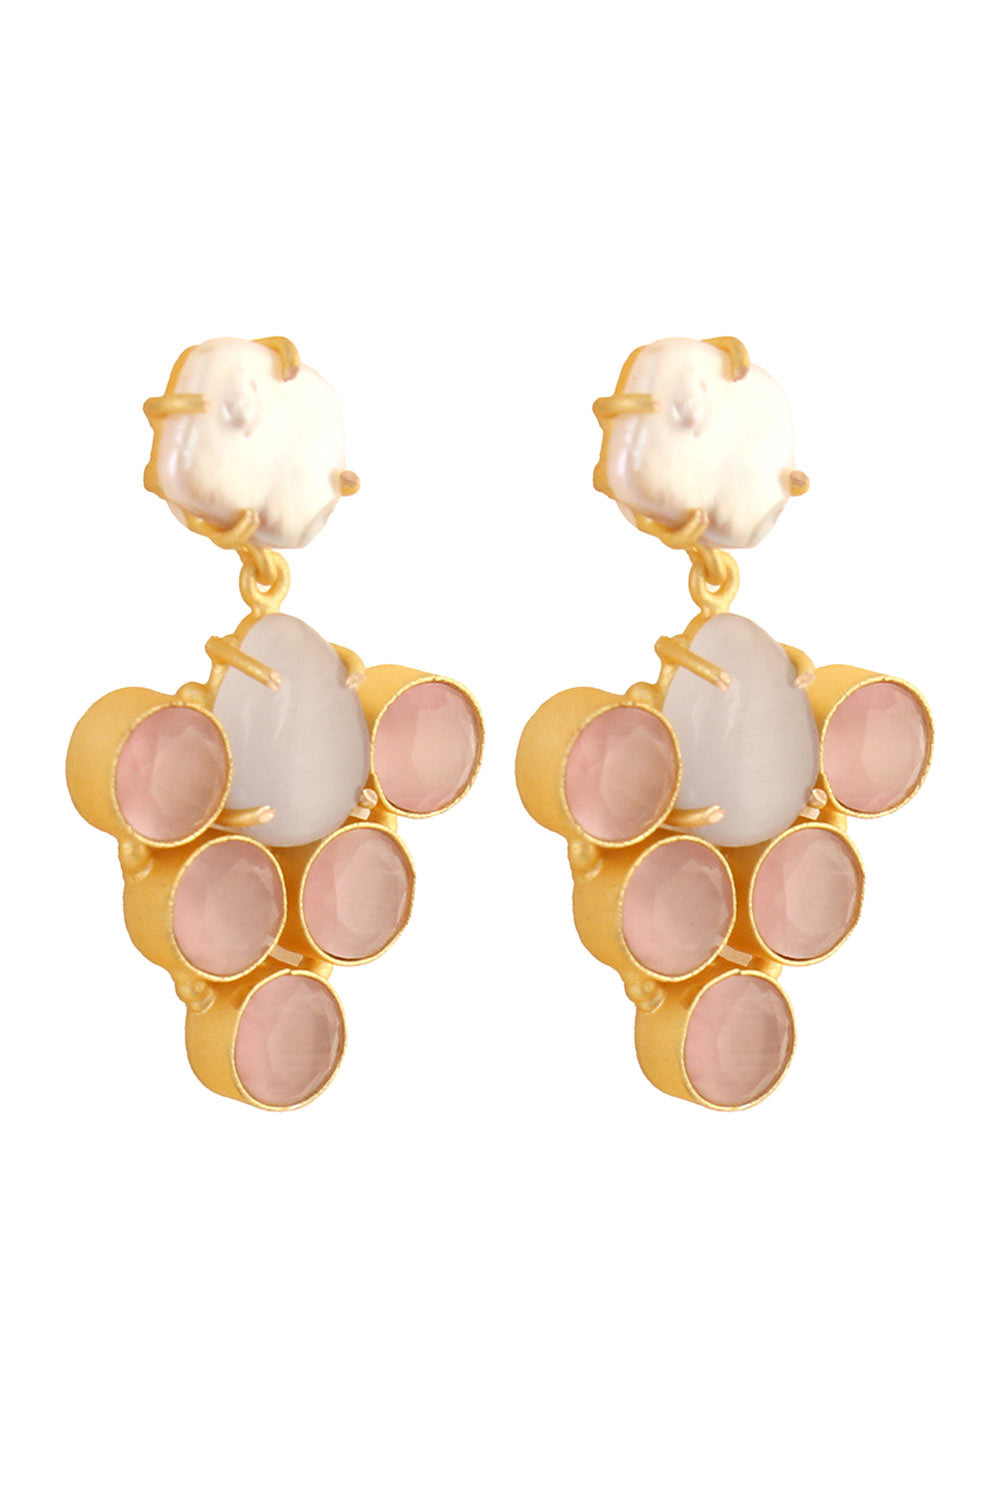 Buy Rukia Grey & Pink Monalisa Stone and Fresh Water Pearl Earrings Online - Zoom In